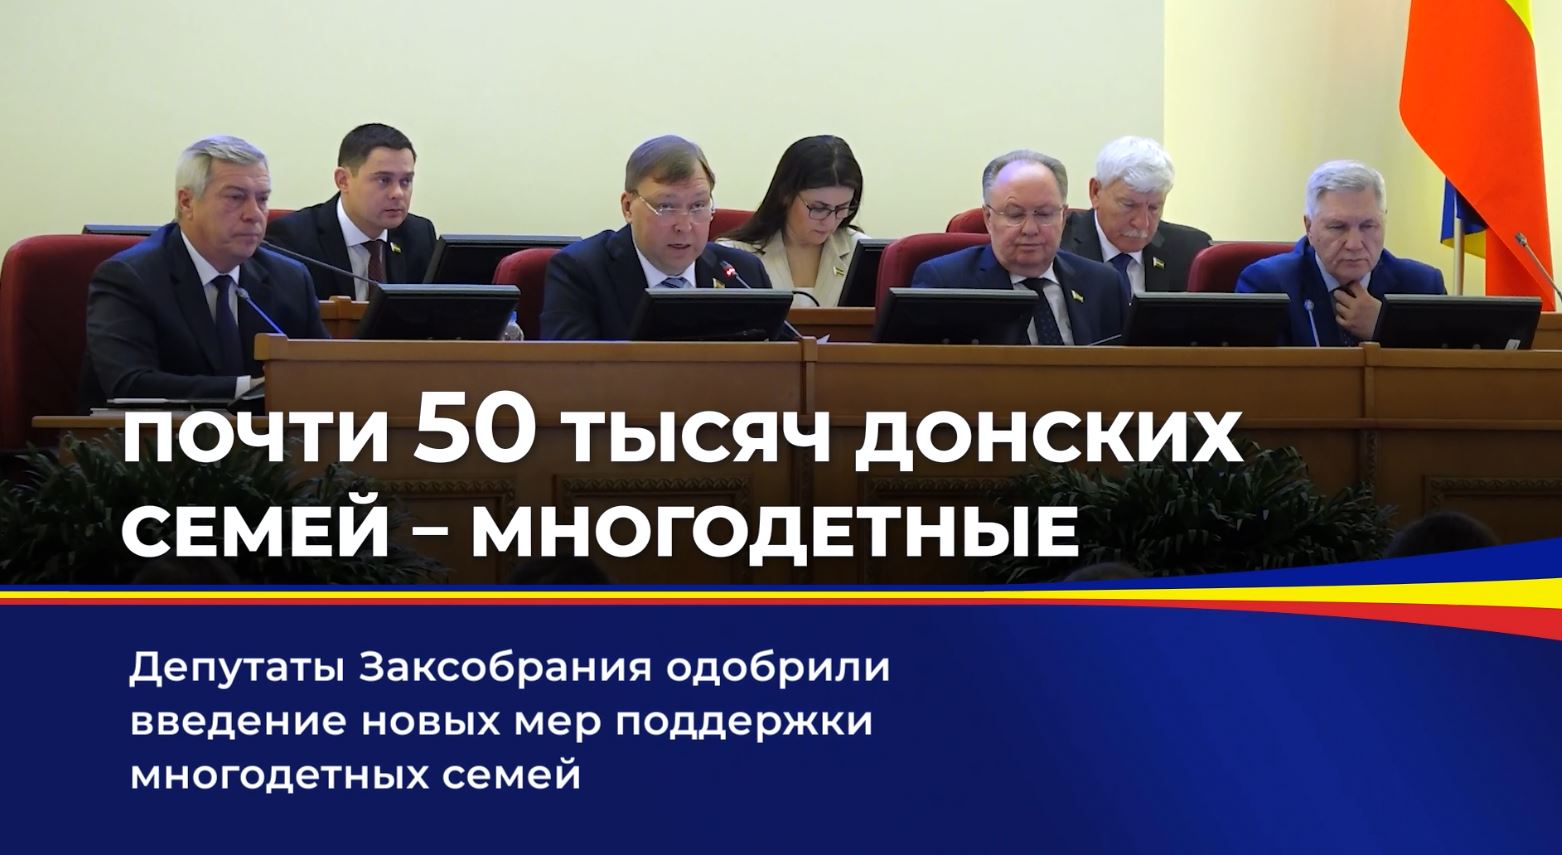 Депутаты Заксобрания одобрили введение новых мер поддержки многодетных семей